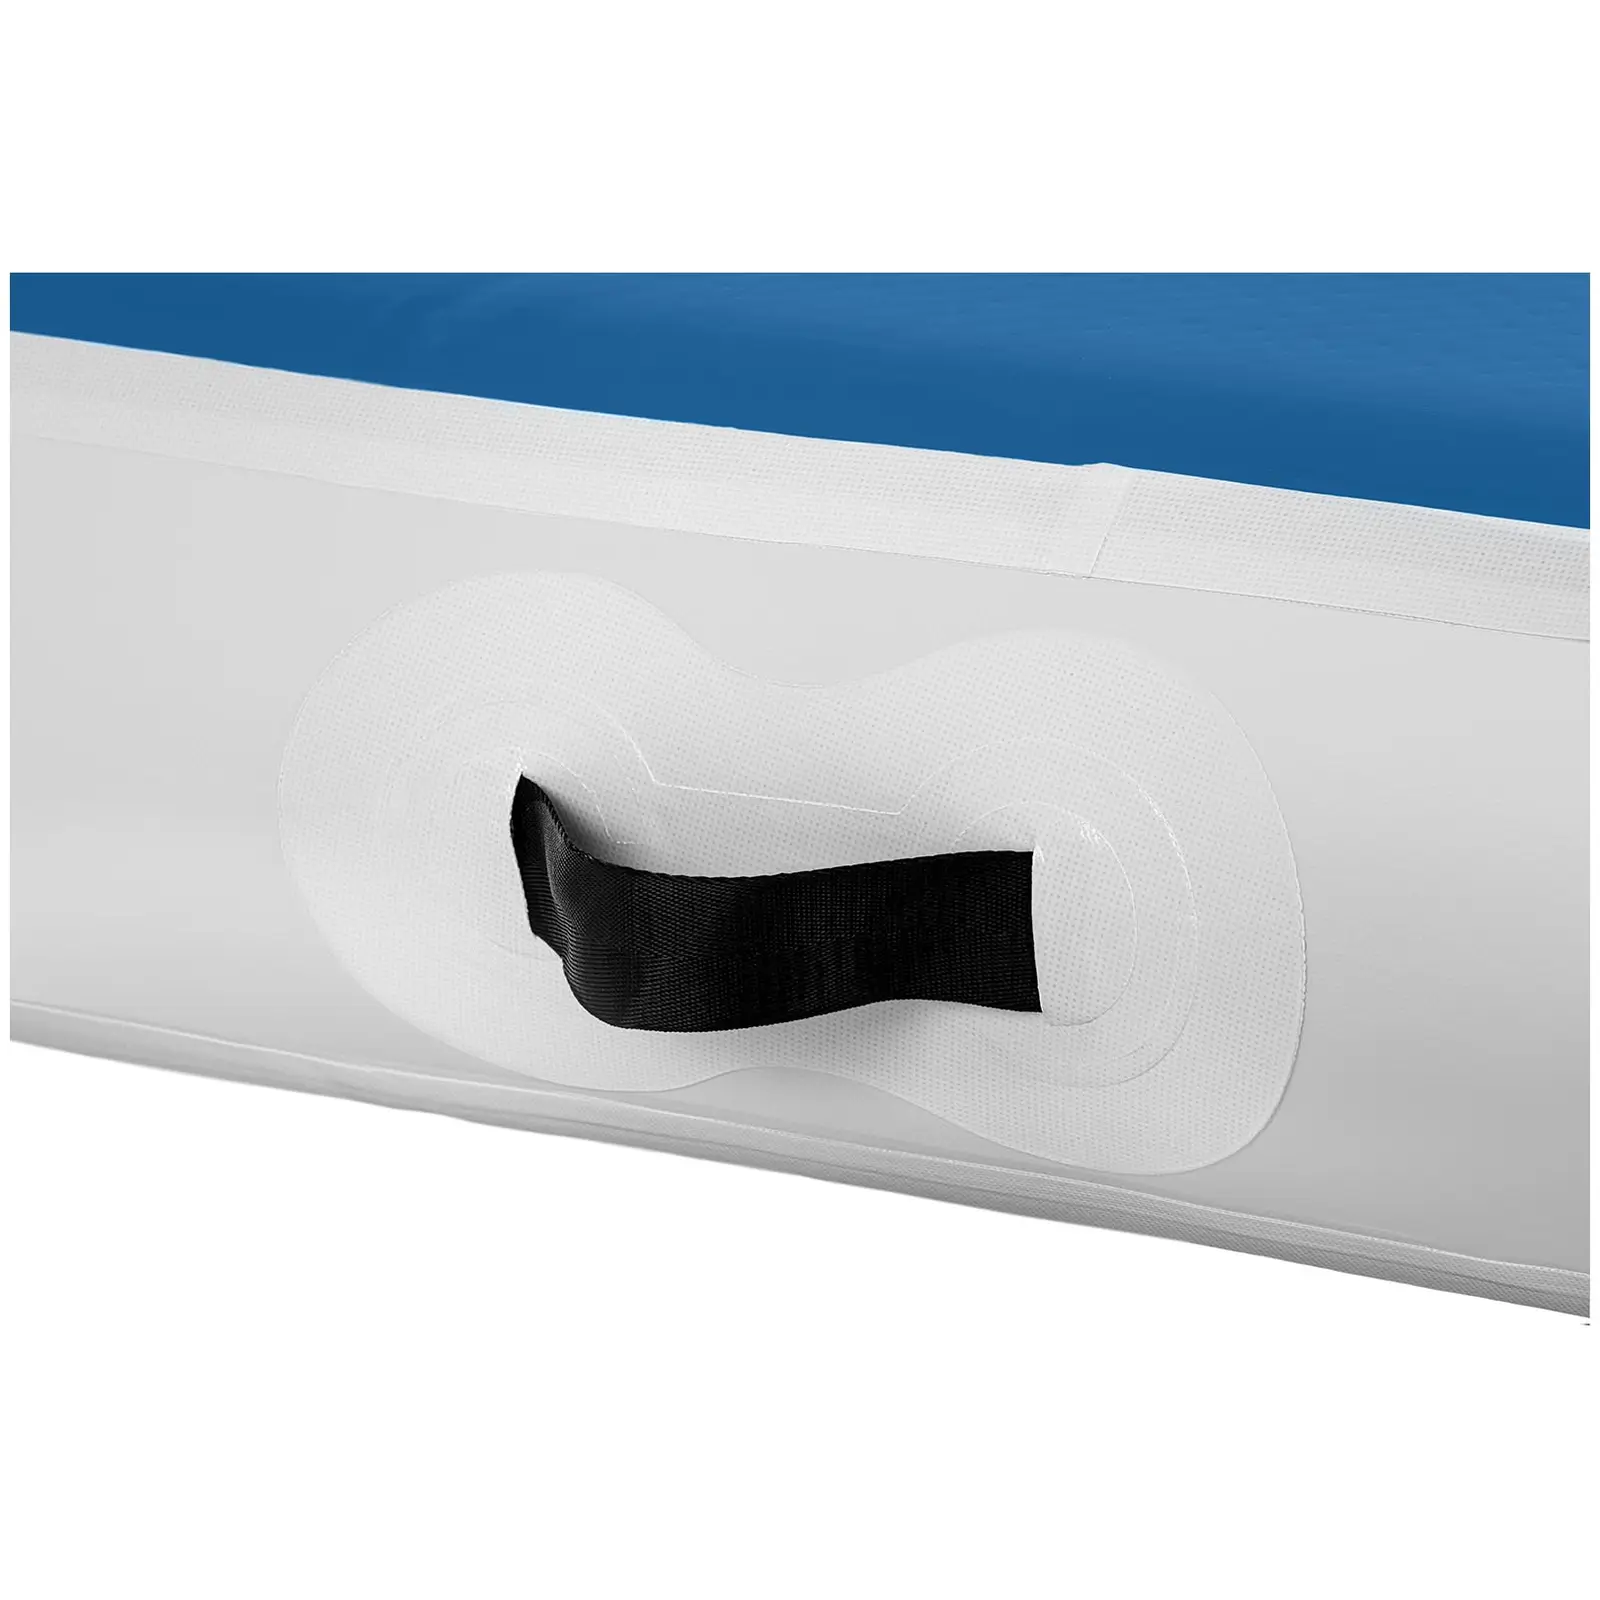 Air track avec gonfleur électrique - 400 x 100 x 20 cm - 200 kg - Bleu/blanc